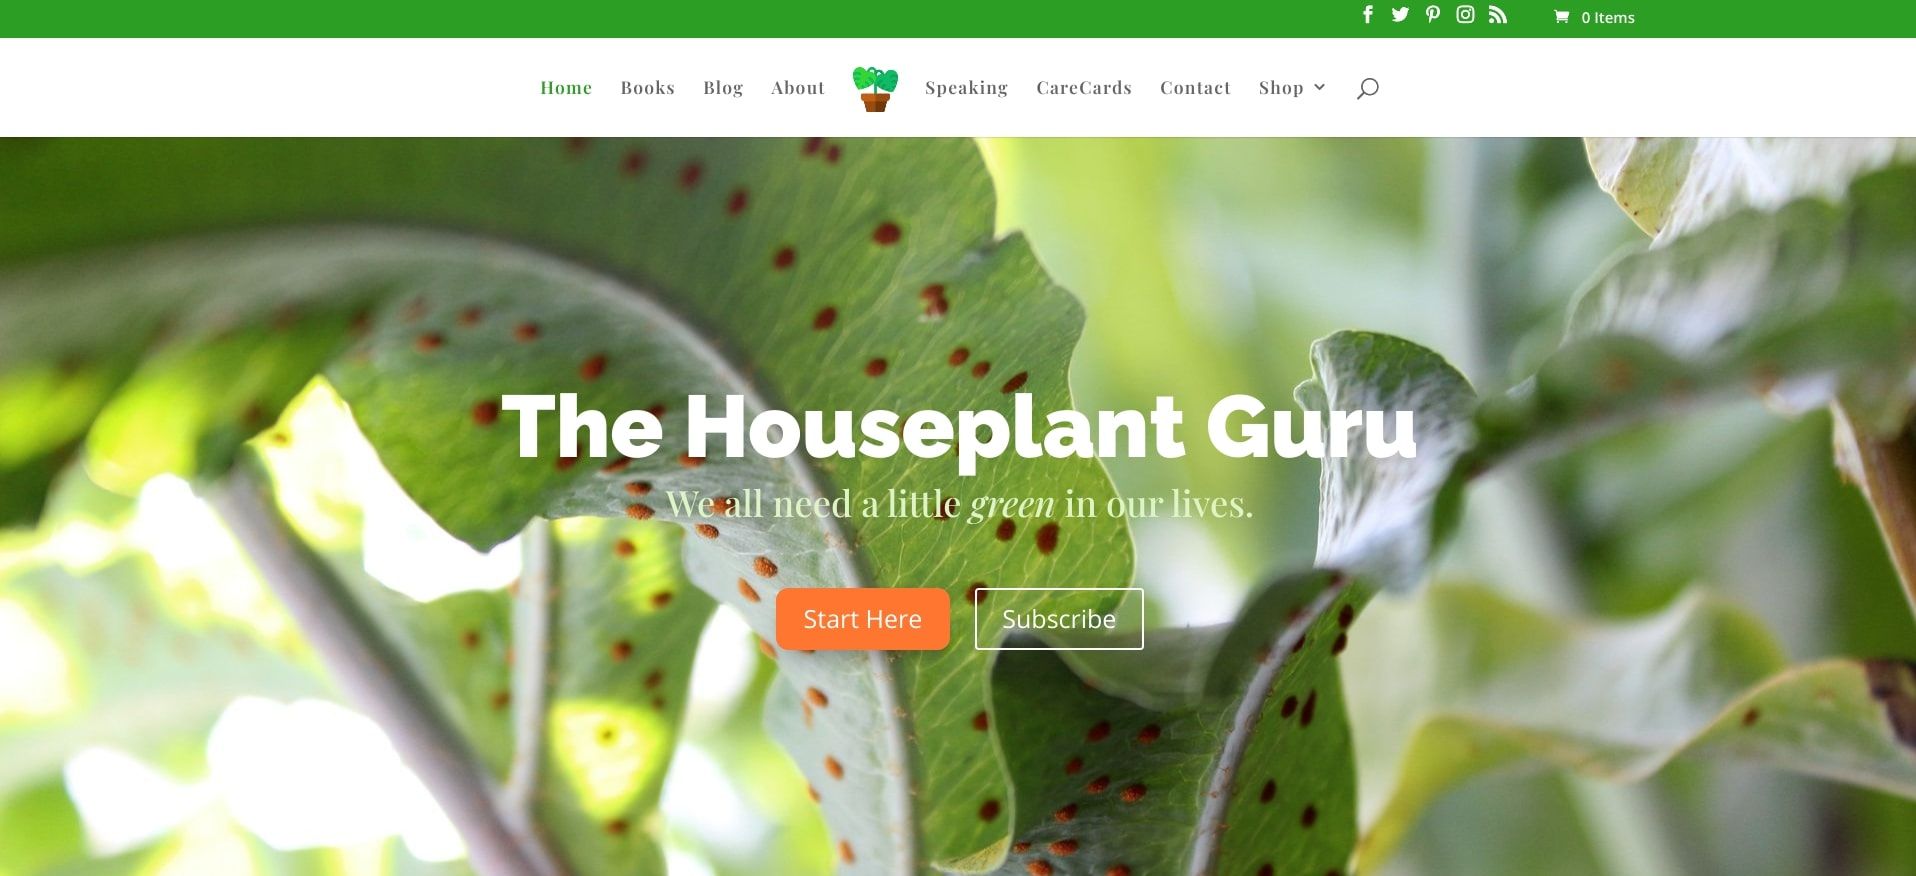 thehouseplantguru scrnsht - 5 siti che possono aiutarti con la cura delle piante d’appartamento